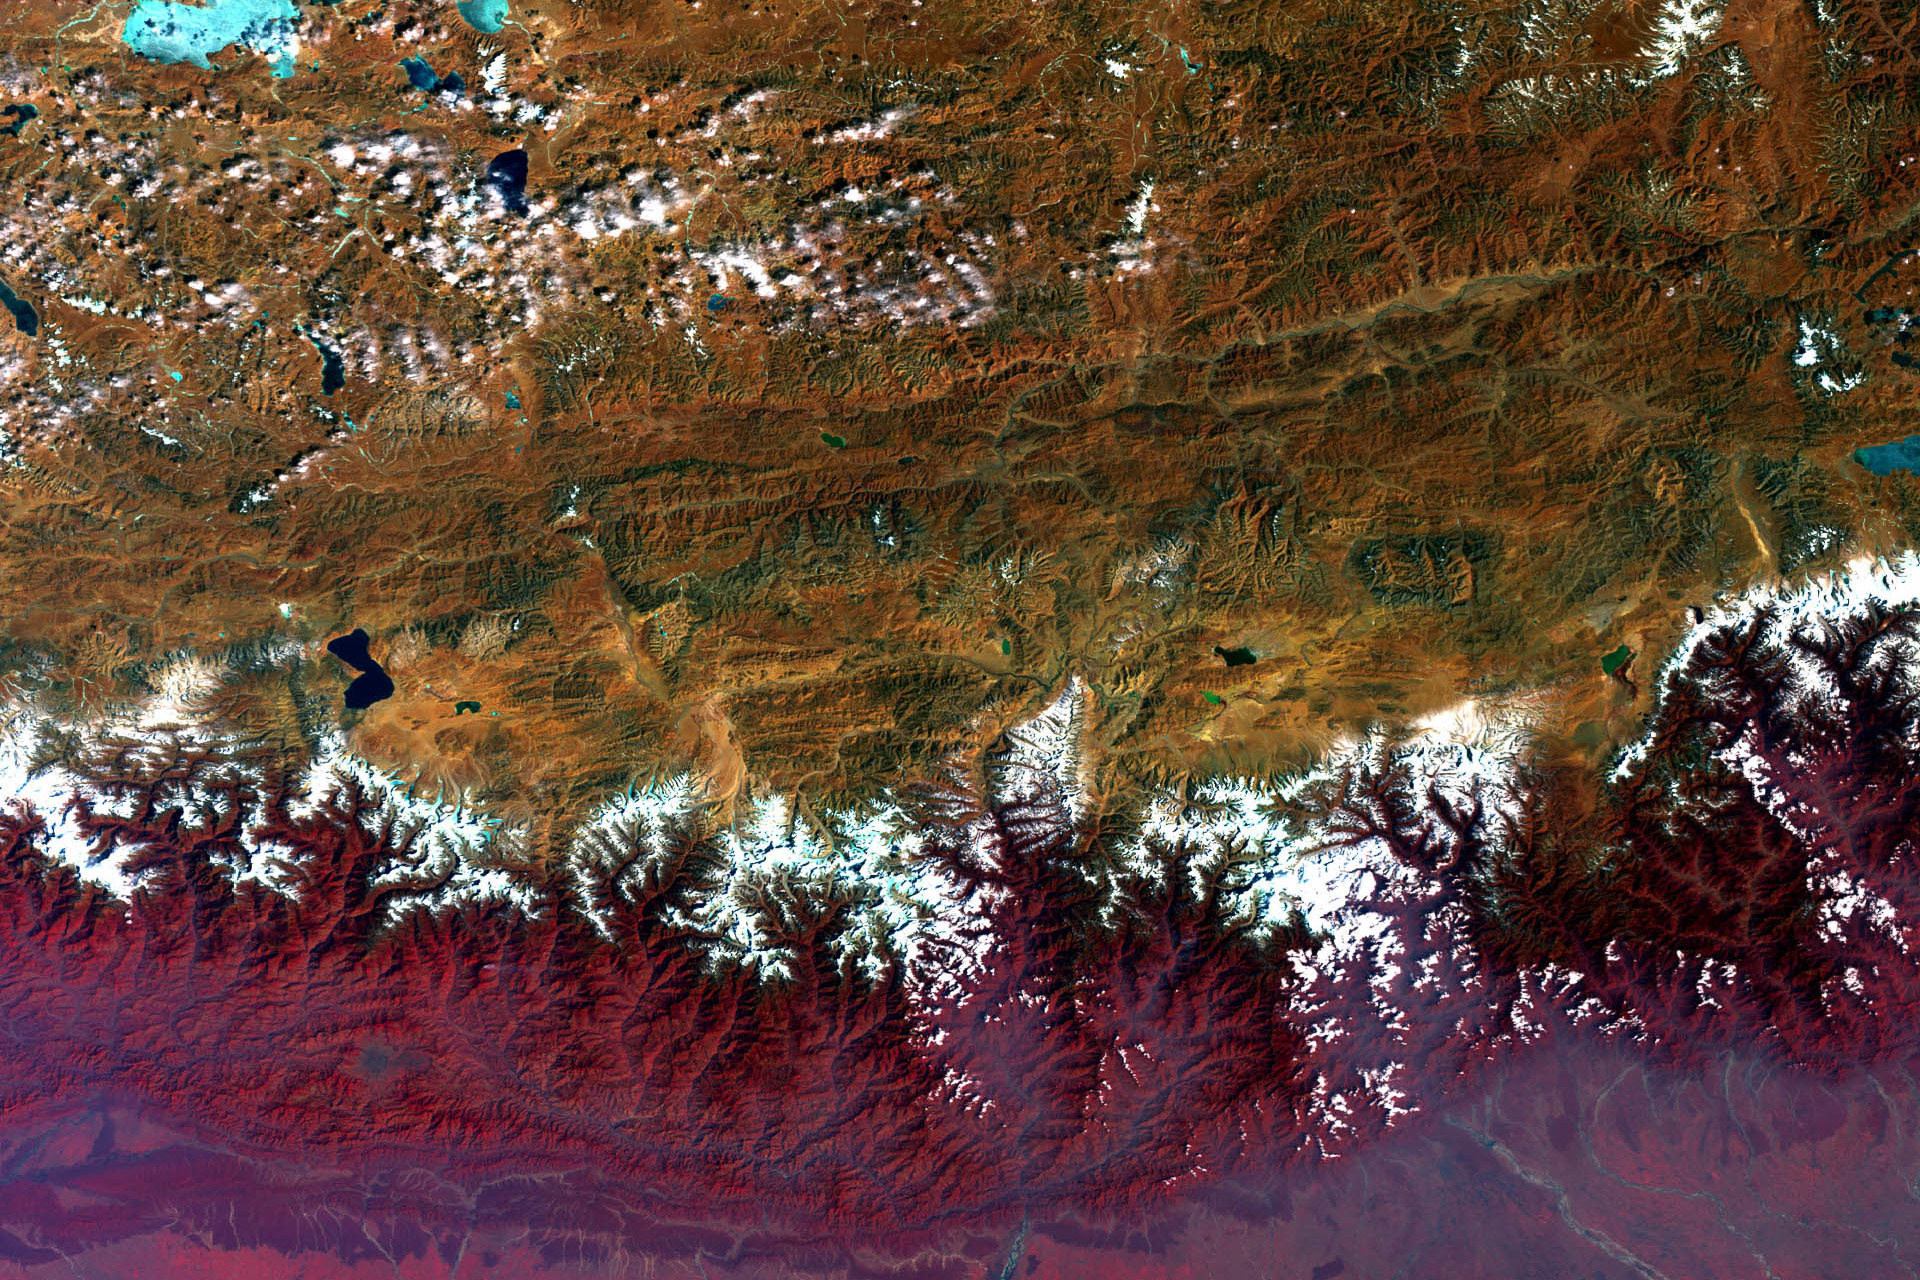 Himalayas and the Tibetan Plateau. Source: Visible Earth, NASA, 2009.